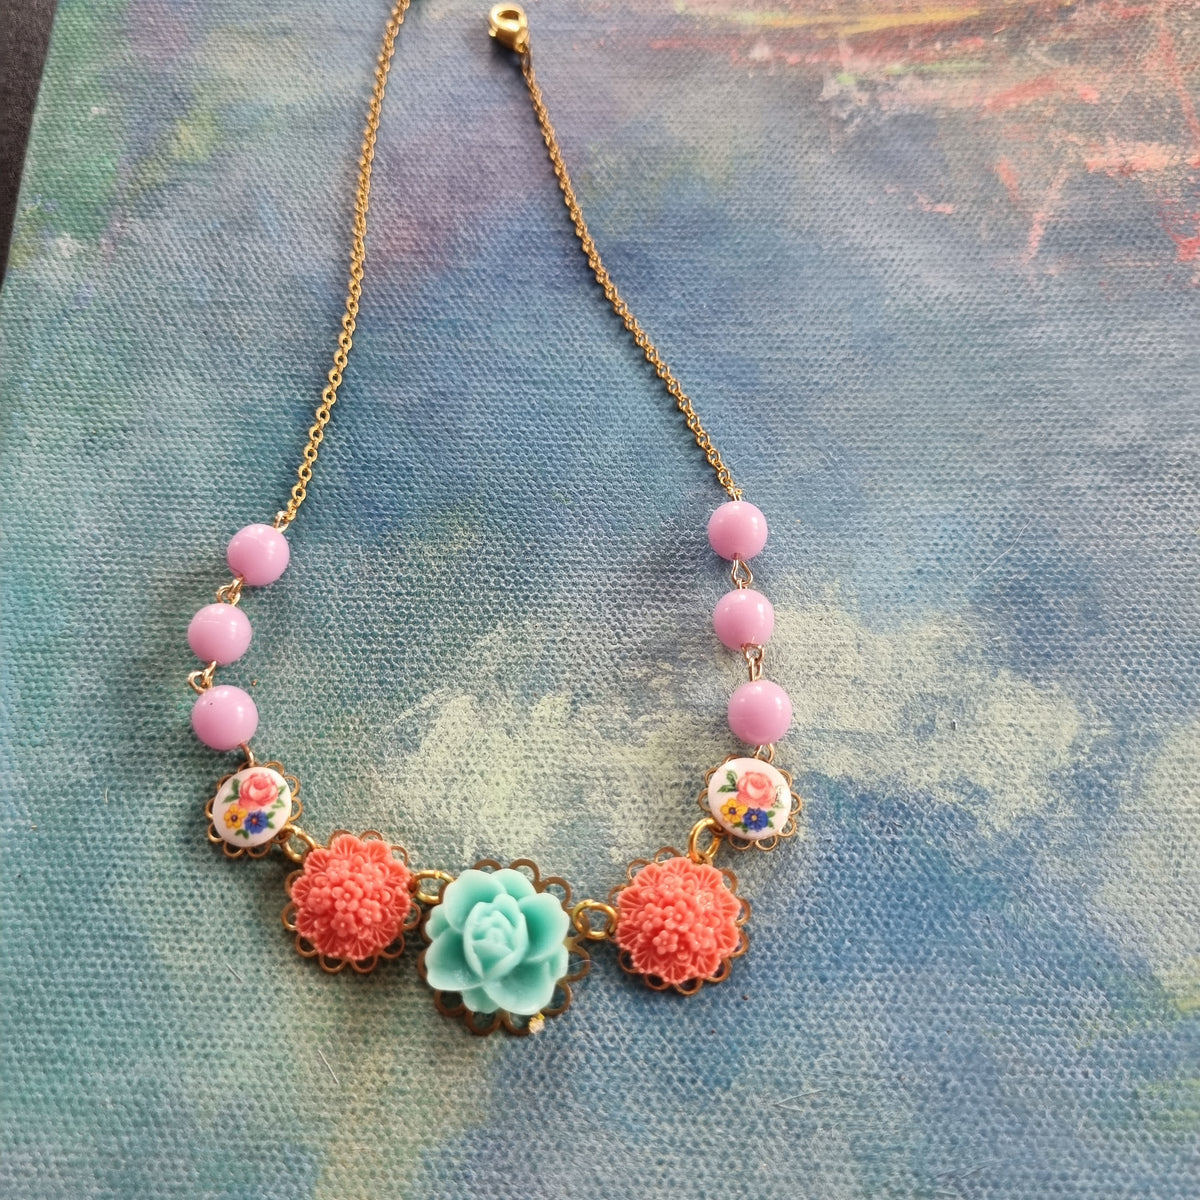 Lille halskæde #5 - Hårpynt med blomster og perler til bryllup, konfirmation og fest